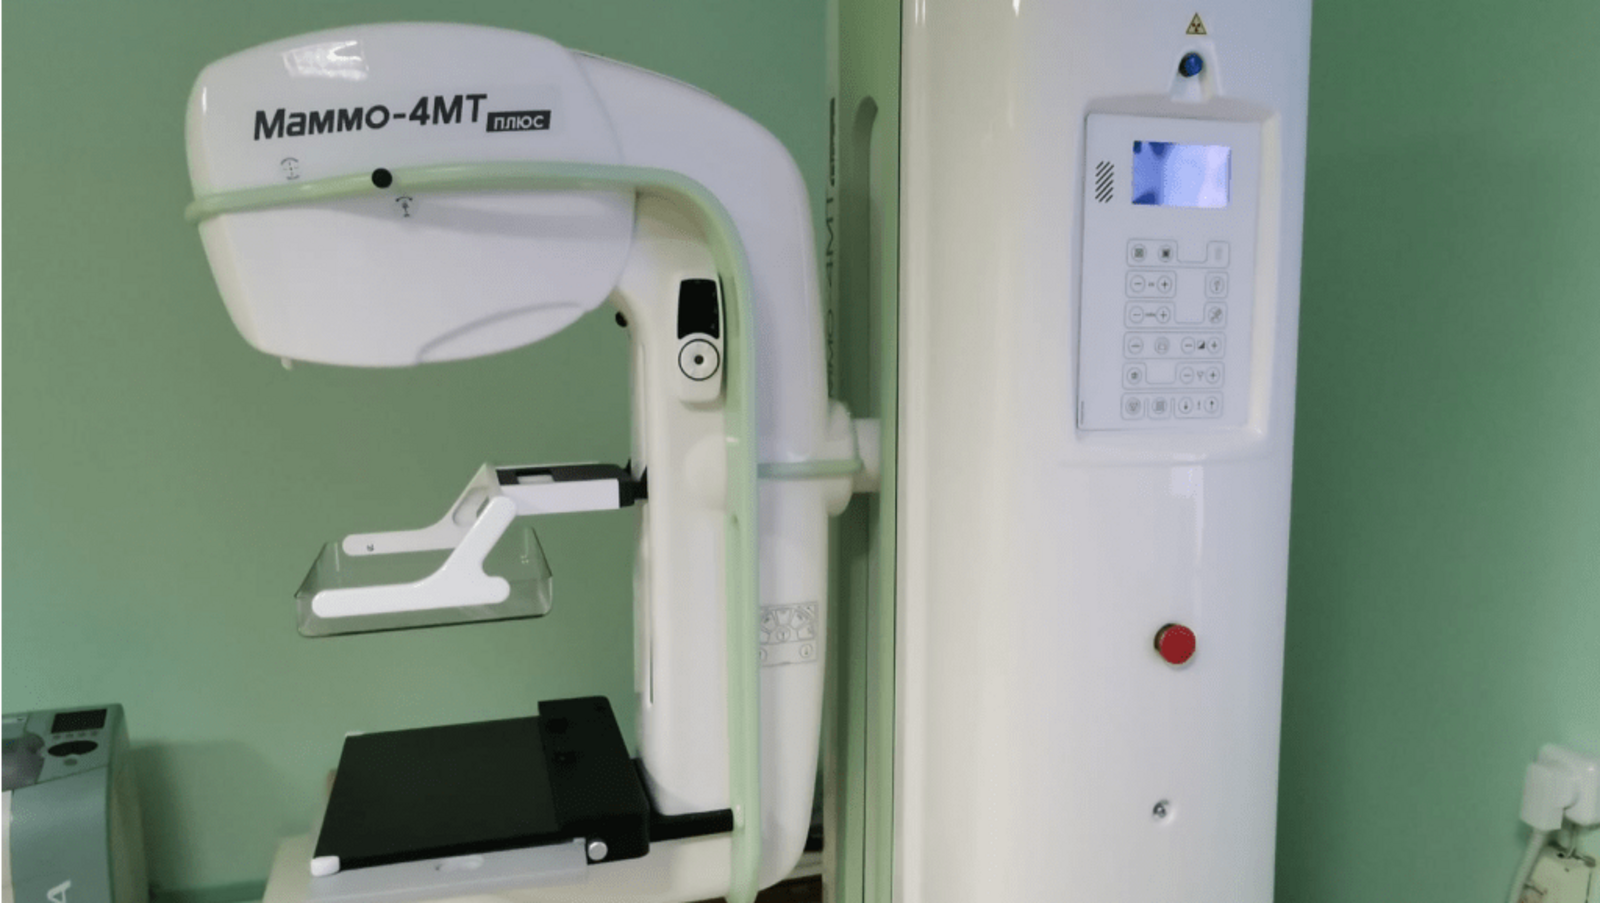 Месягутовская больница республики Башкирии получила новый аппарат-маммограф